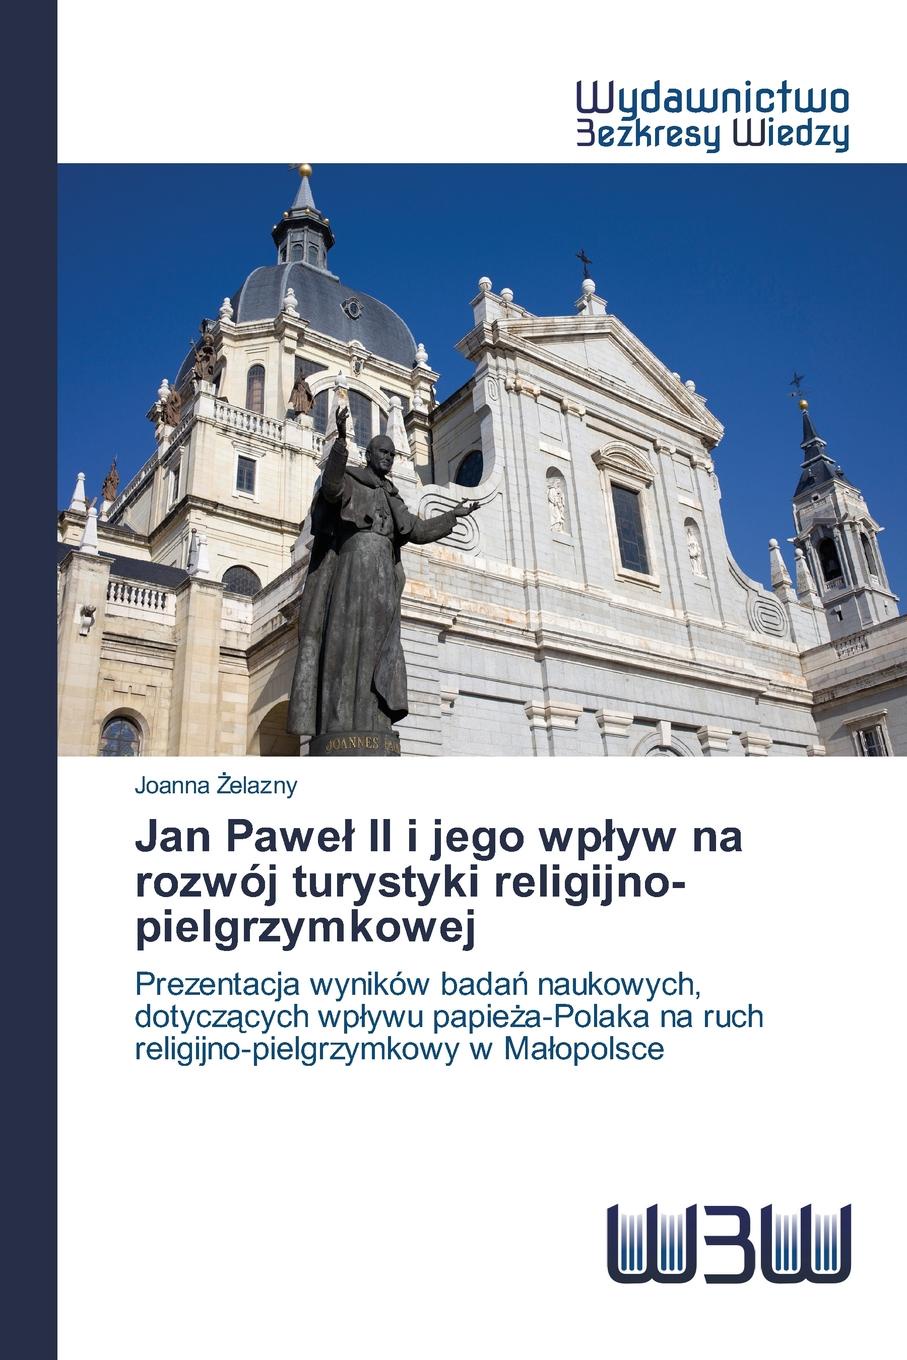 Żelazny Joanna Jan Pawel II i jego wplyw na rozwoj turystyki religijno-pielgrzymkowej